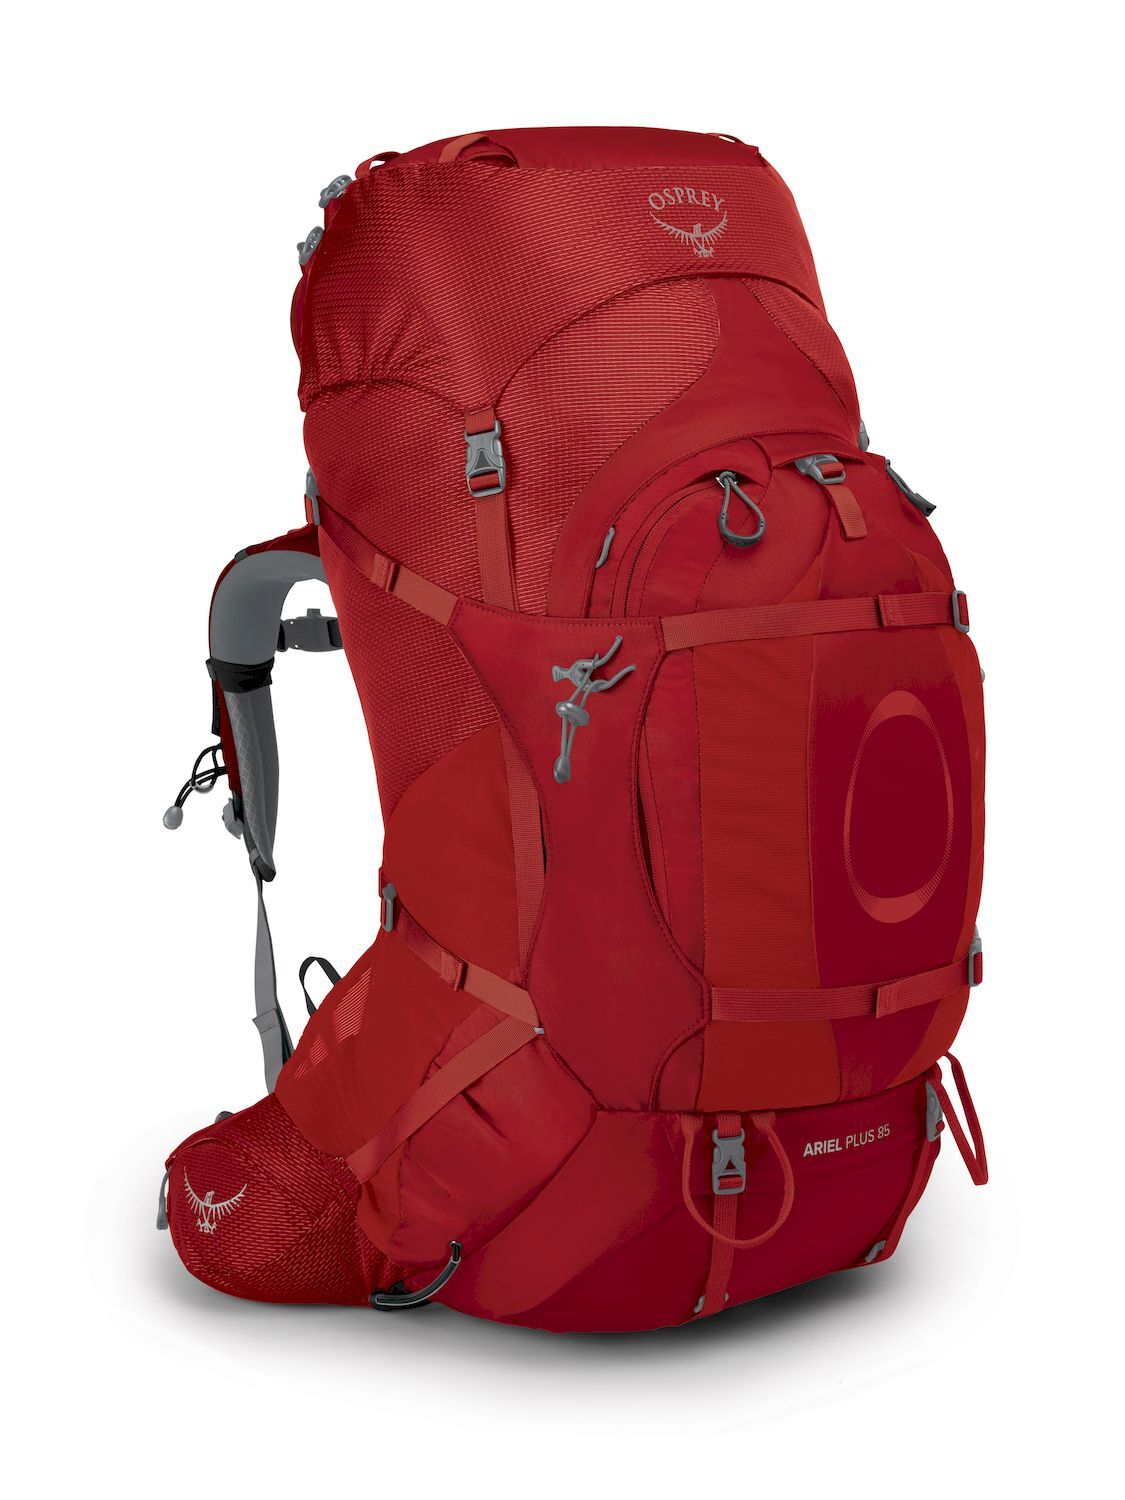 Osprey Ariel Plus 85 - Hiking backpack - Women's